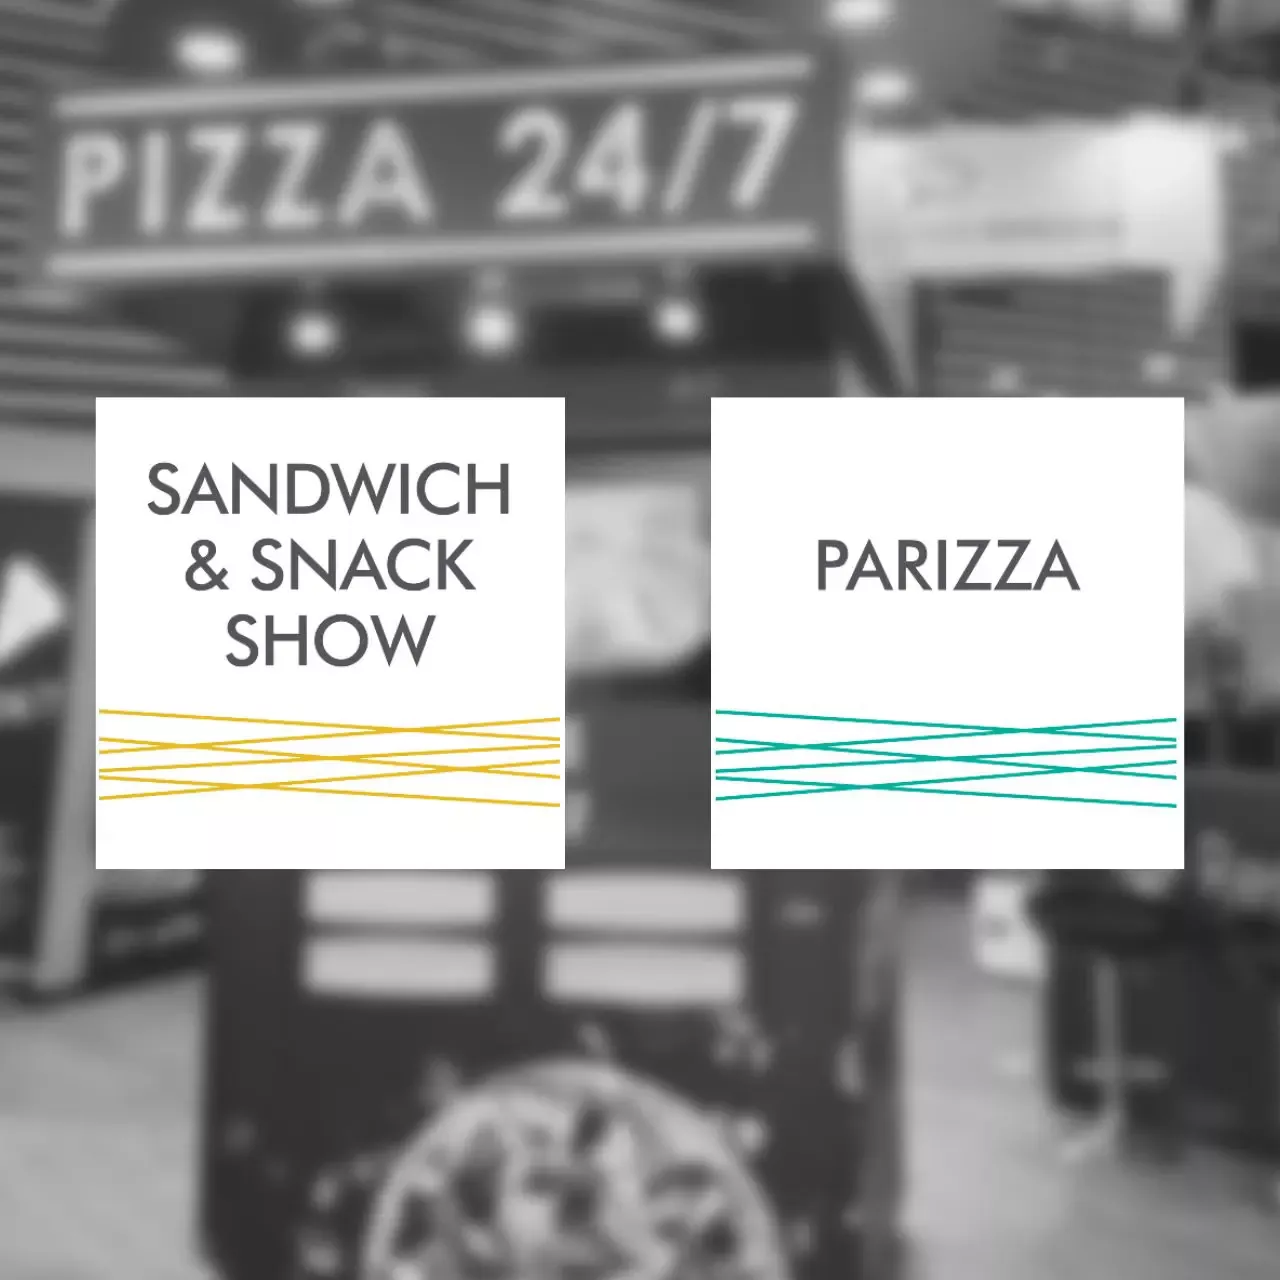 Salon sandwich and snack show et parizza